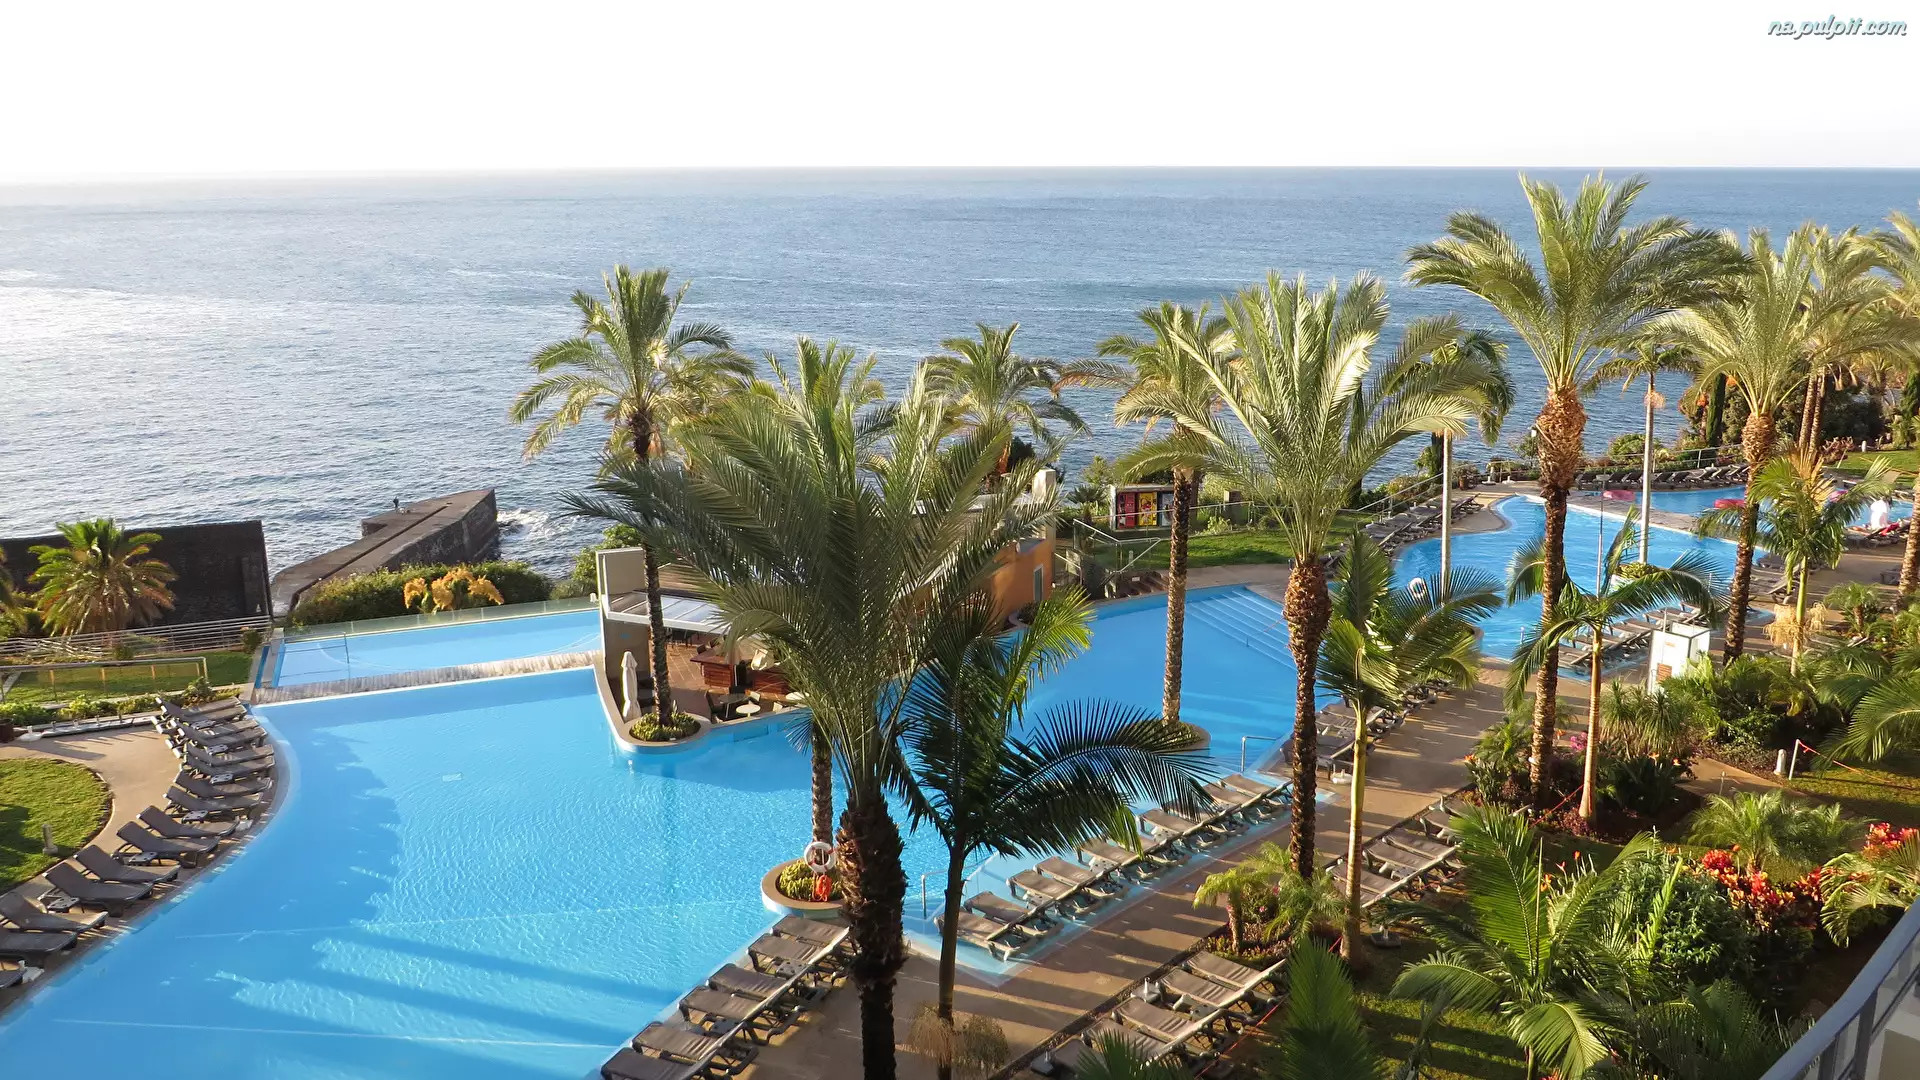 Wakacje, Miejscowość Funchal, Ocean Atlantycki, Palmy, Morze, Madera, Portugalia, Hotel Pestana Promenade, Basen